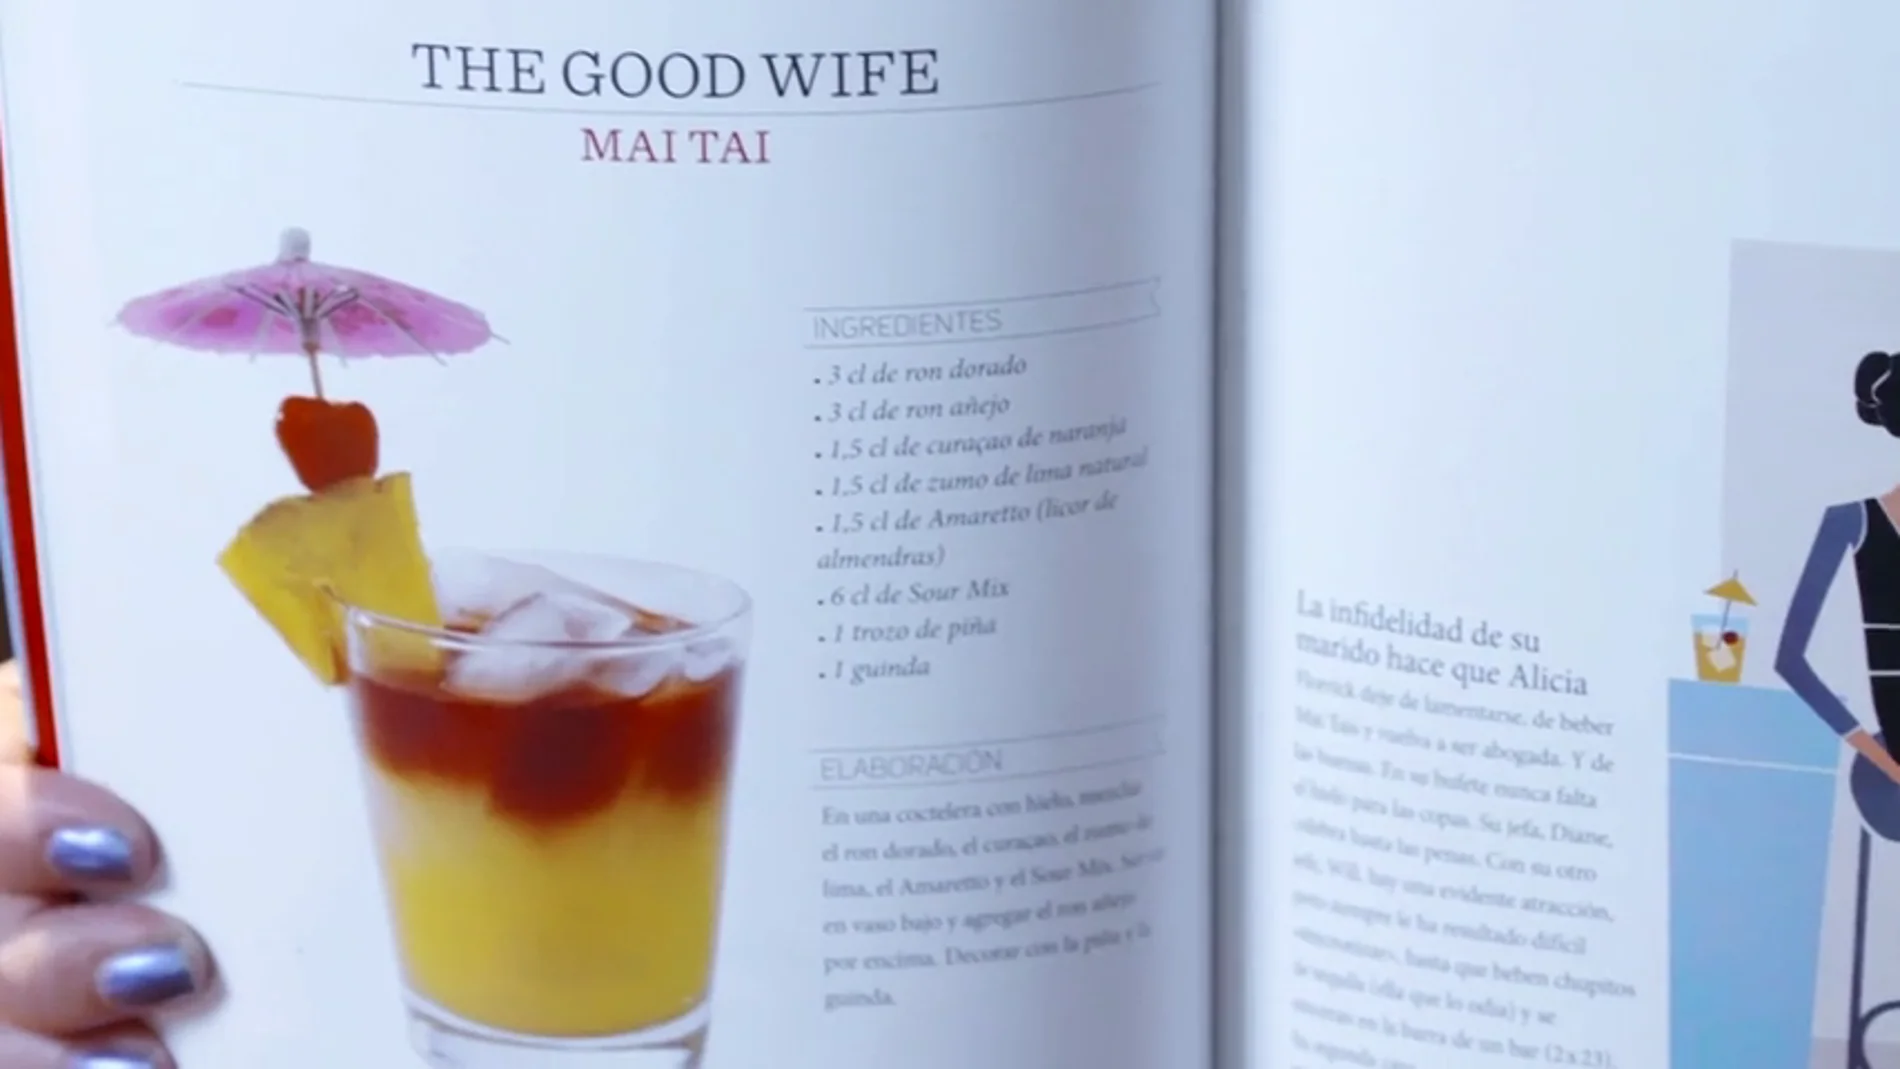 Frame 83.014262 de: ¿Sabes qué cócteles beberían los personajes de 'The good wife'?